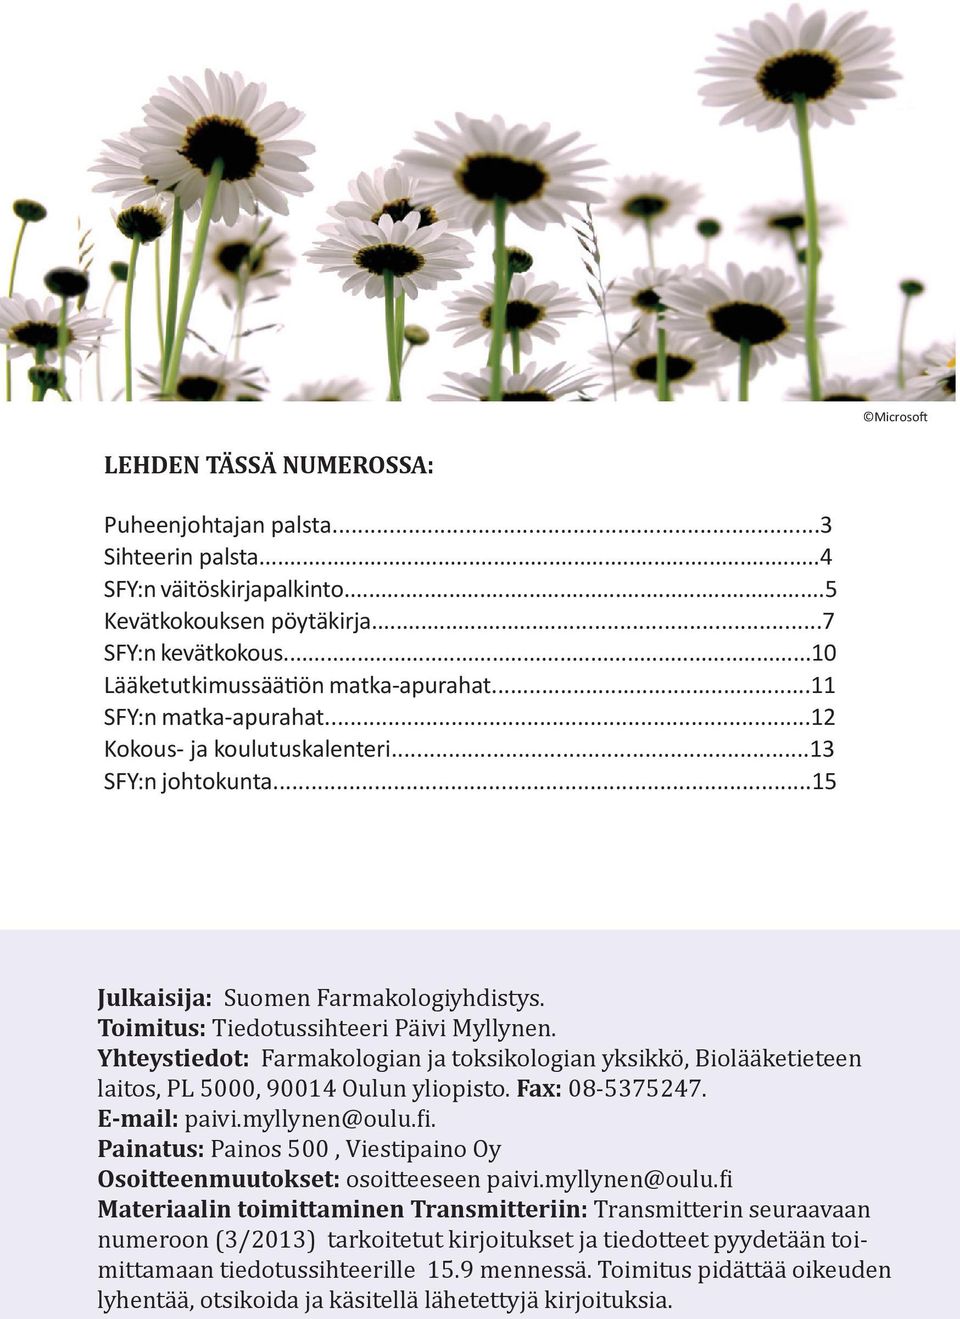 Yhteystiedot: Farmakologian ja toksikologian yksikkö, Biolääketieteen laitos, PL 5000, 90014 Oulun yliopisto. Fax: 08-5375247. E-mail: paivi.myllynen@oulu.fi.